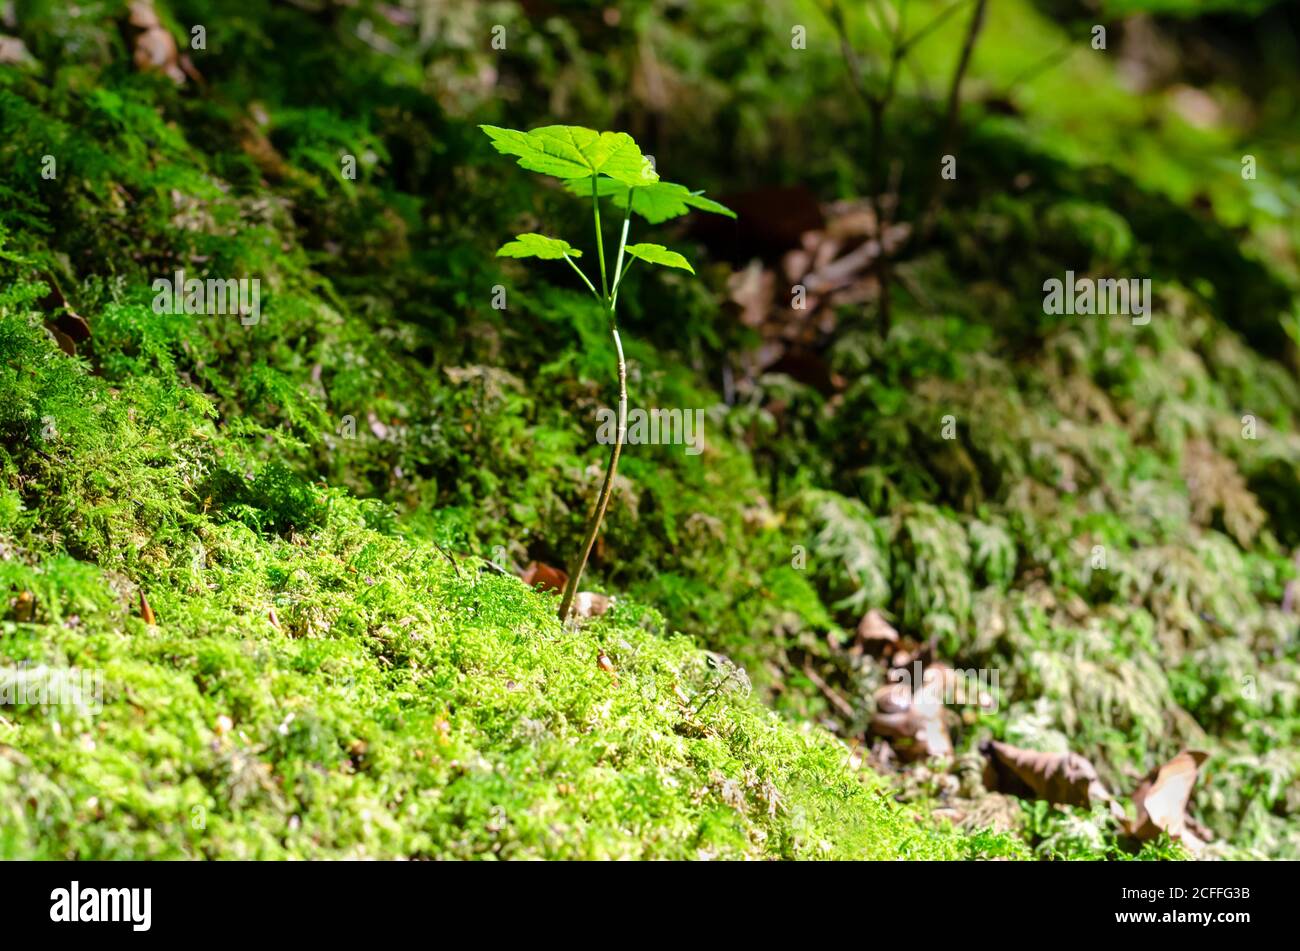 Giovane albero di sycamore alla luce del sole su un pavimento boschivo. Un taglio di Acer pseudoplatanus, un albero d'acero, originario dell'Europa centrale. Foto Stock